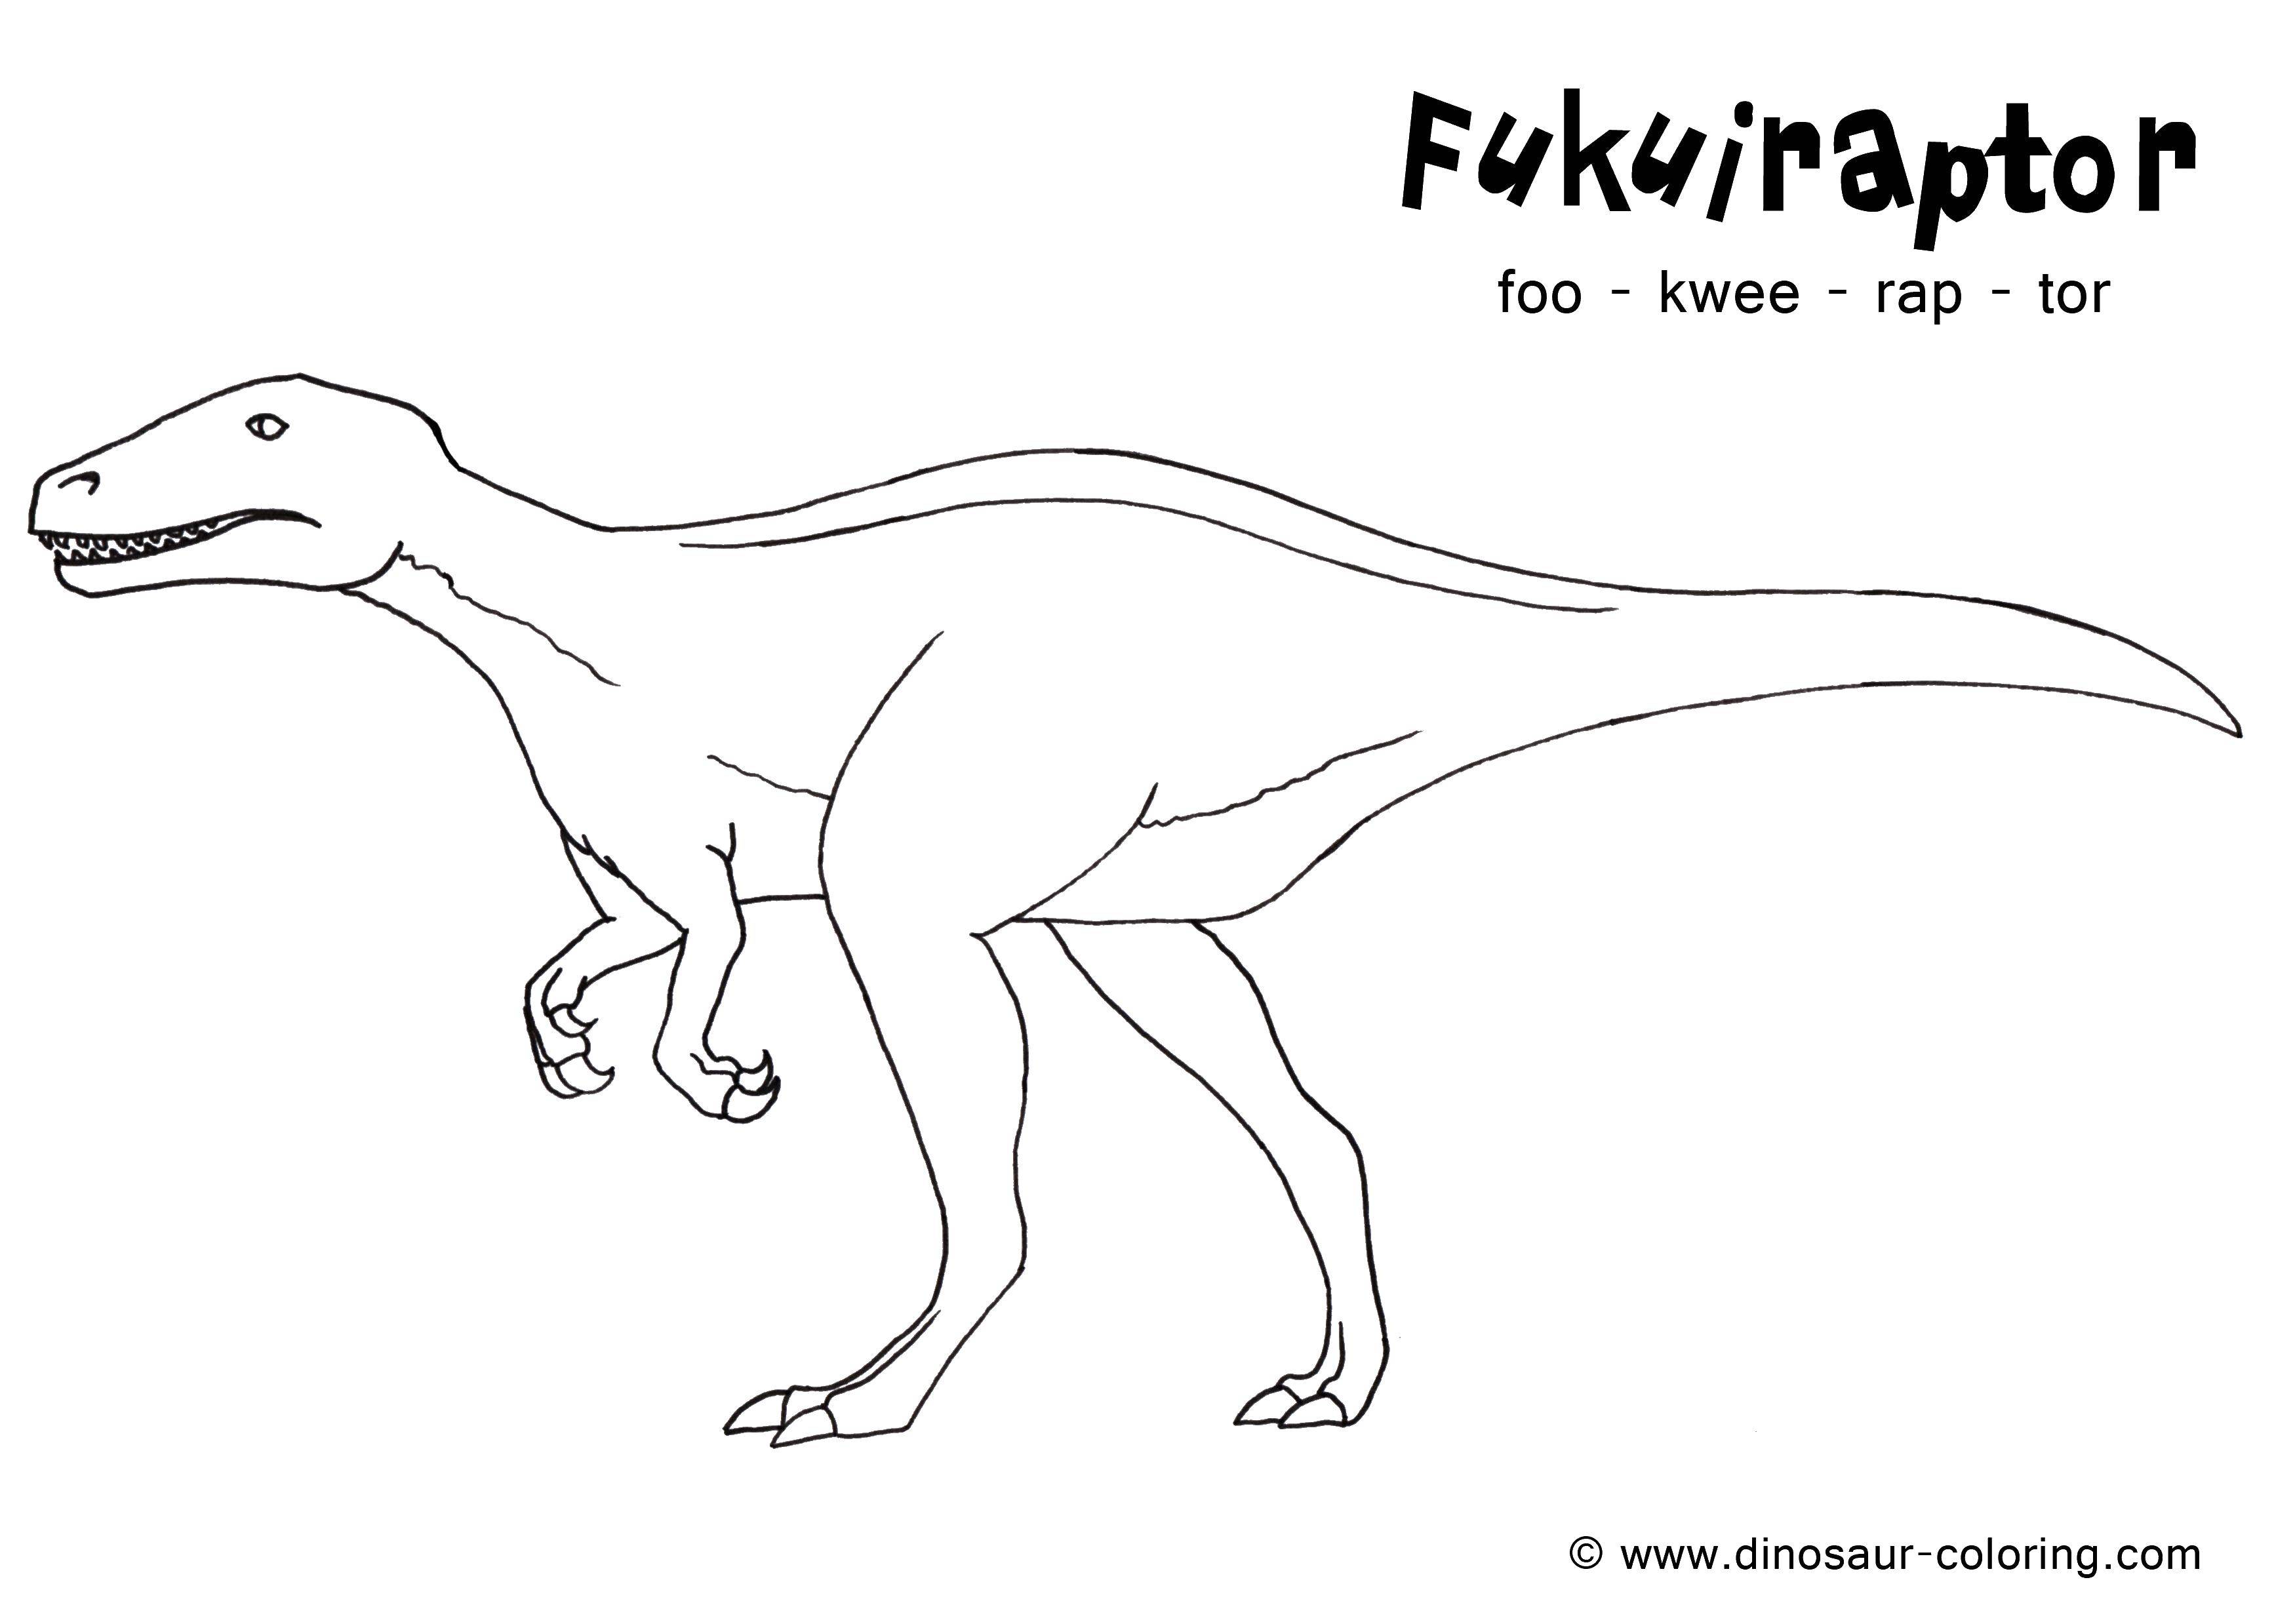 Раскраски с динозавром раптор  Фукураптор